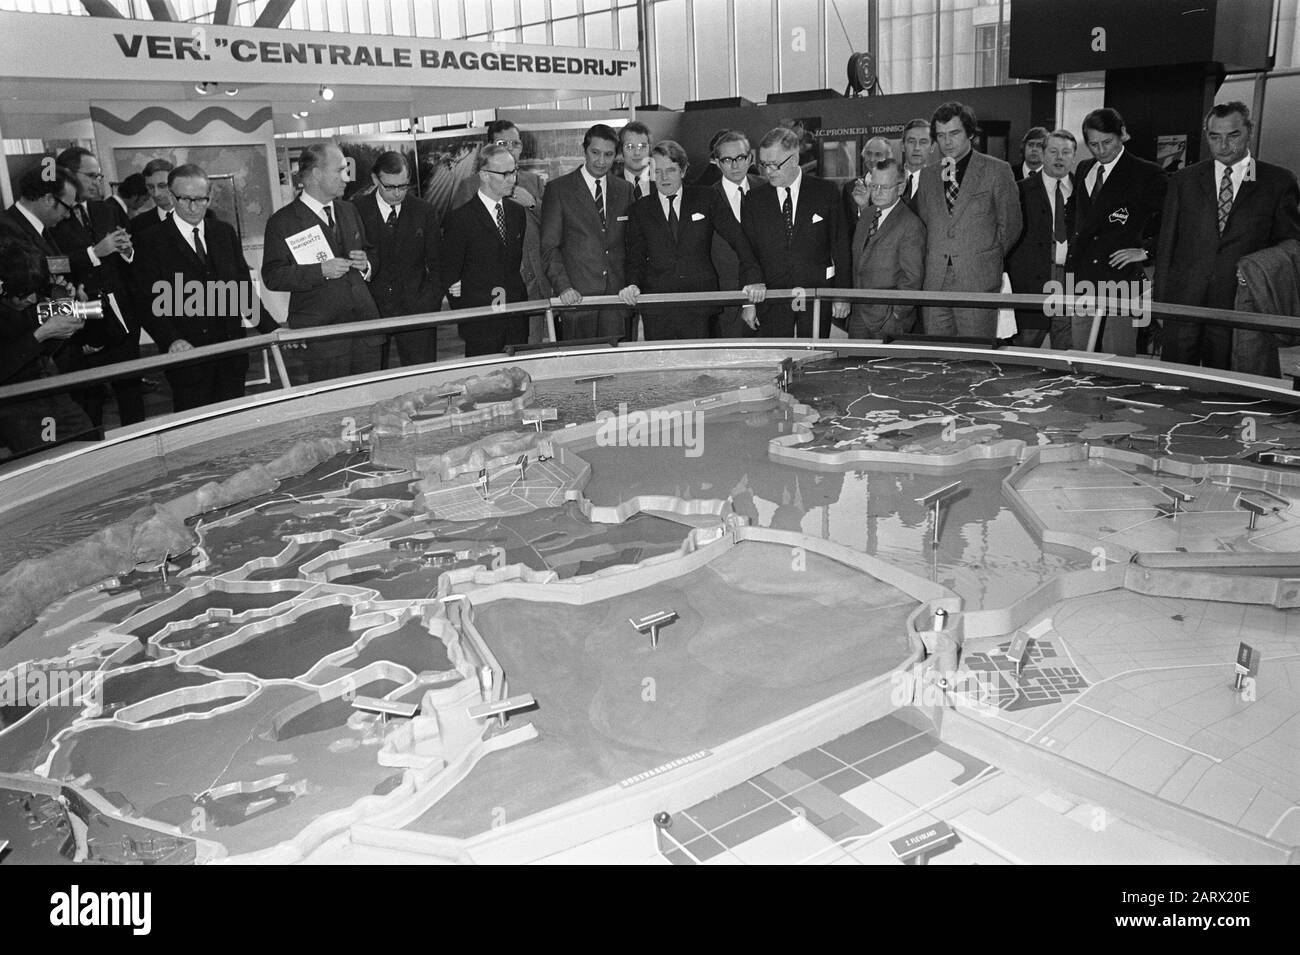 Exposition Europort 1972 ouvert au RAI Date: 14 novembre 1972 mots clés: Expositions Nom de l'institution: RAI Banque D'Images